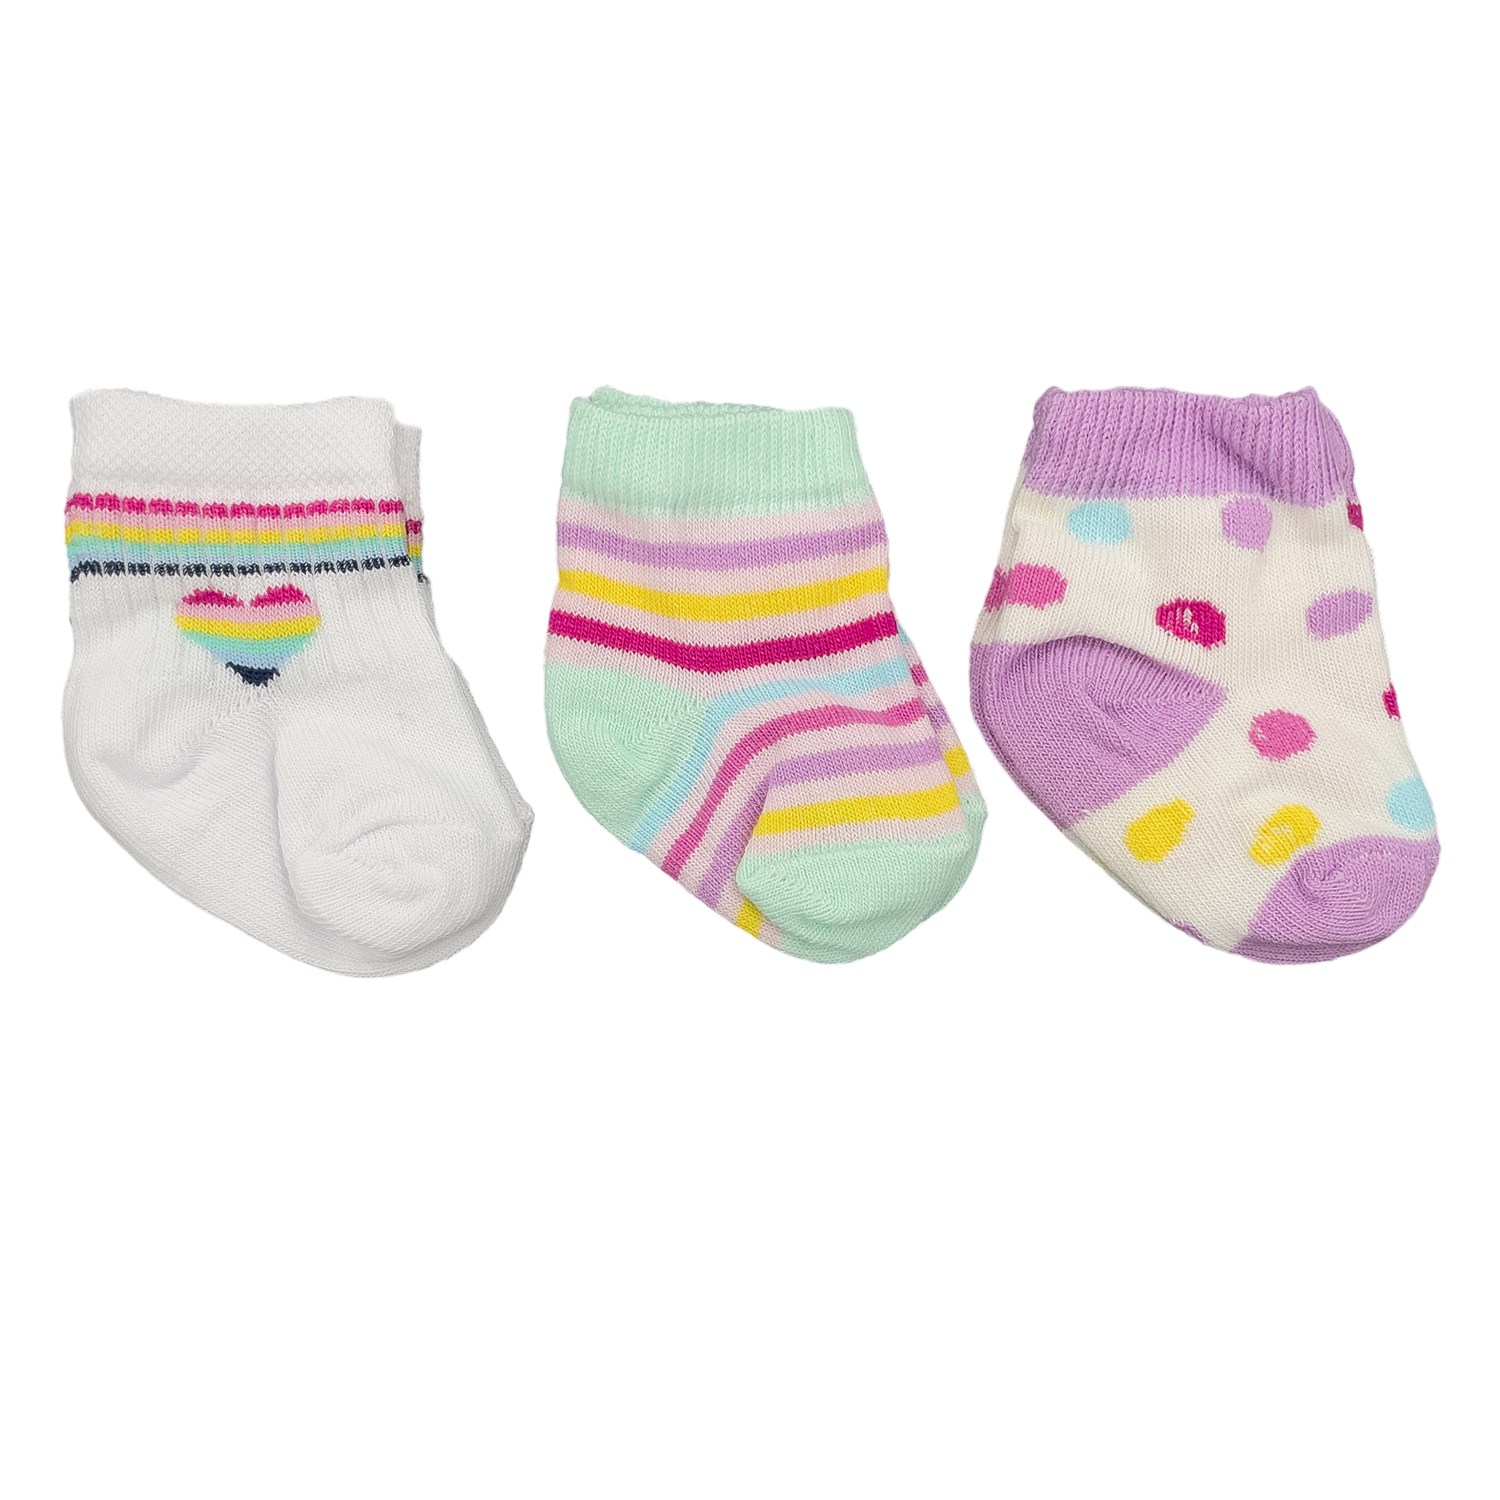 Mini Damla 3'lü Desenli Bebek Çorabı 41910 Beyaz-Mor